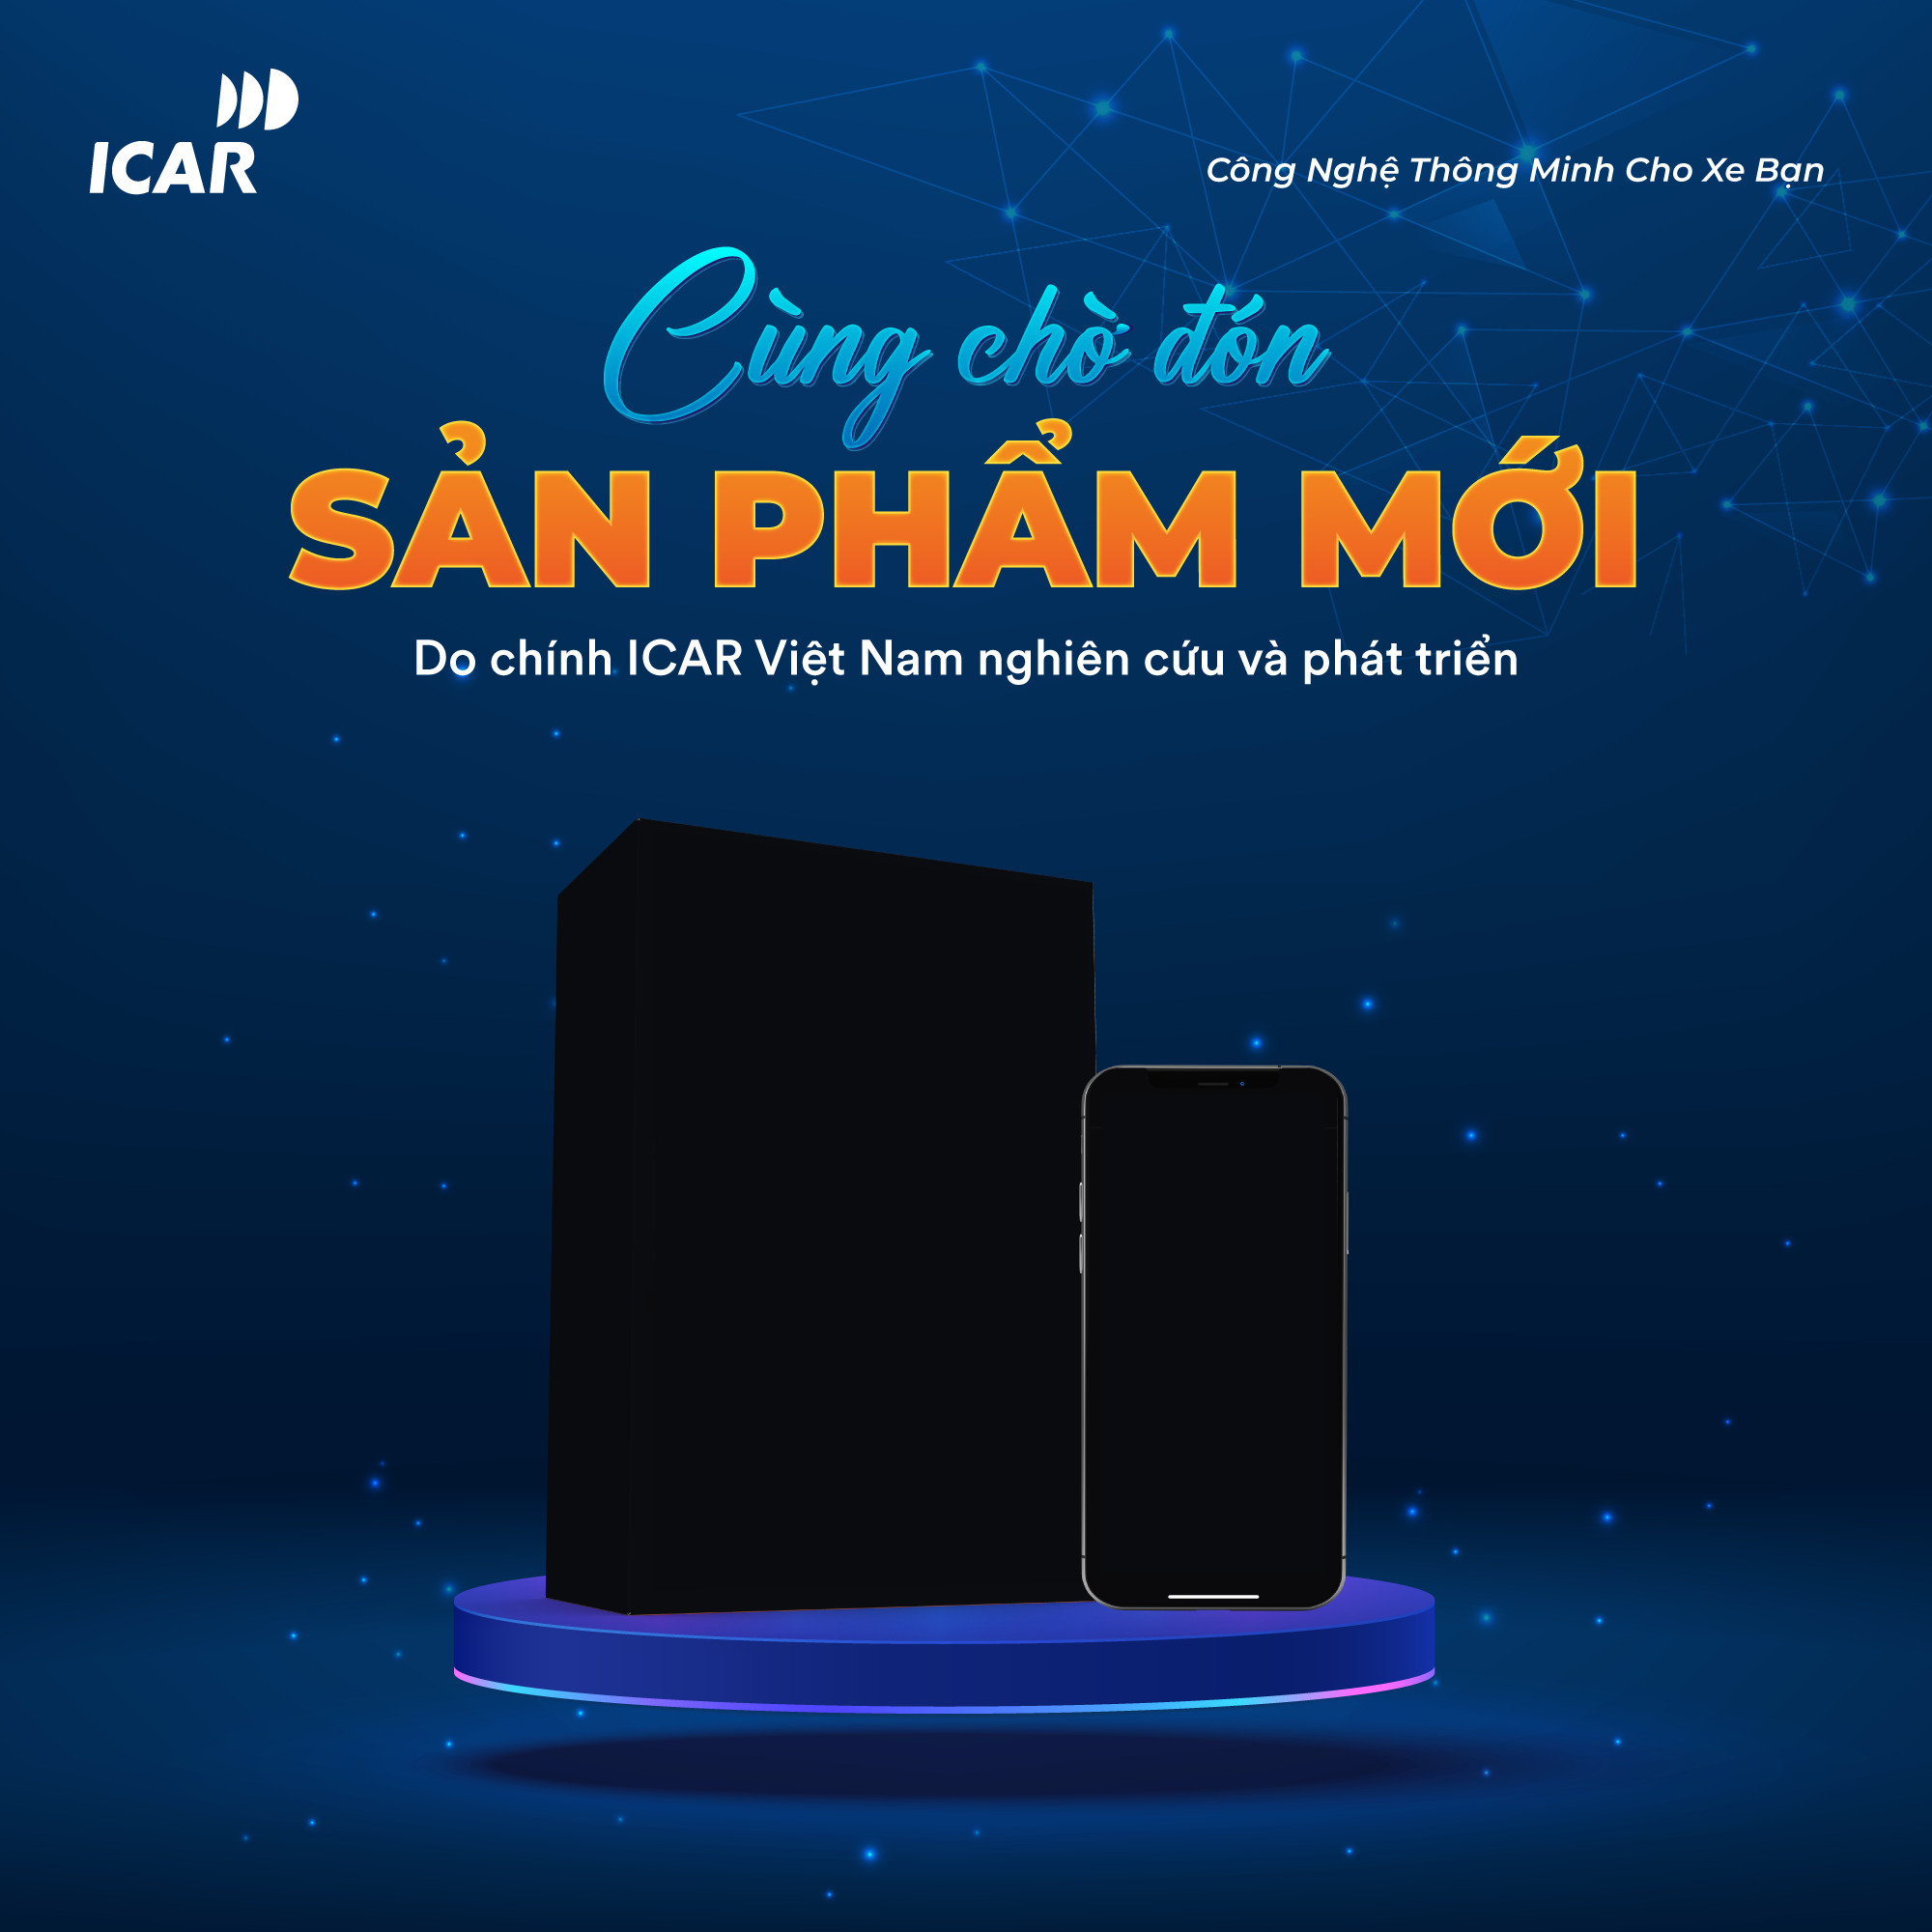 ICAR Việt Nam tổ chức kỷ niệm 5 năm thành lập tại Phú Quốc - 2